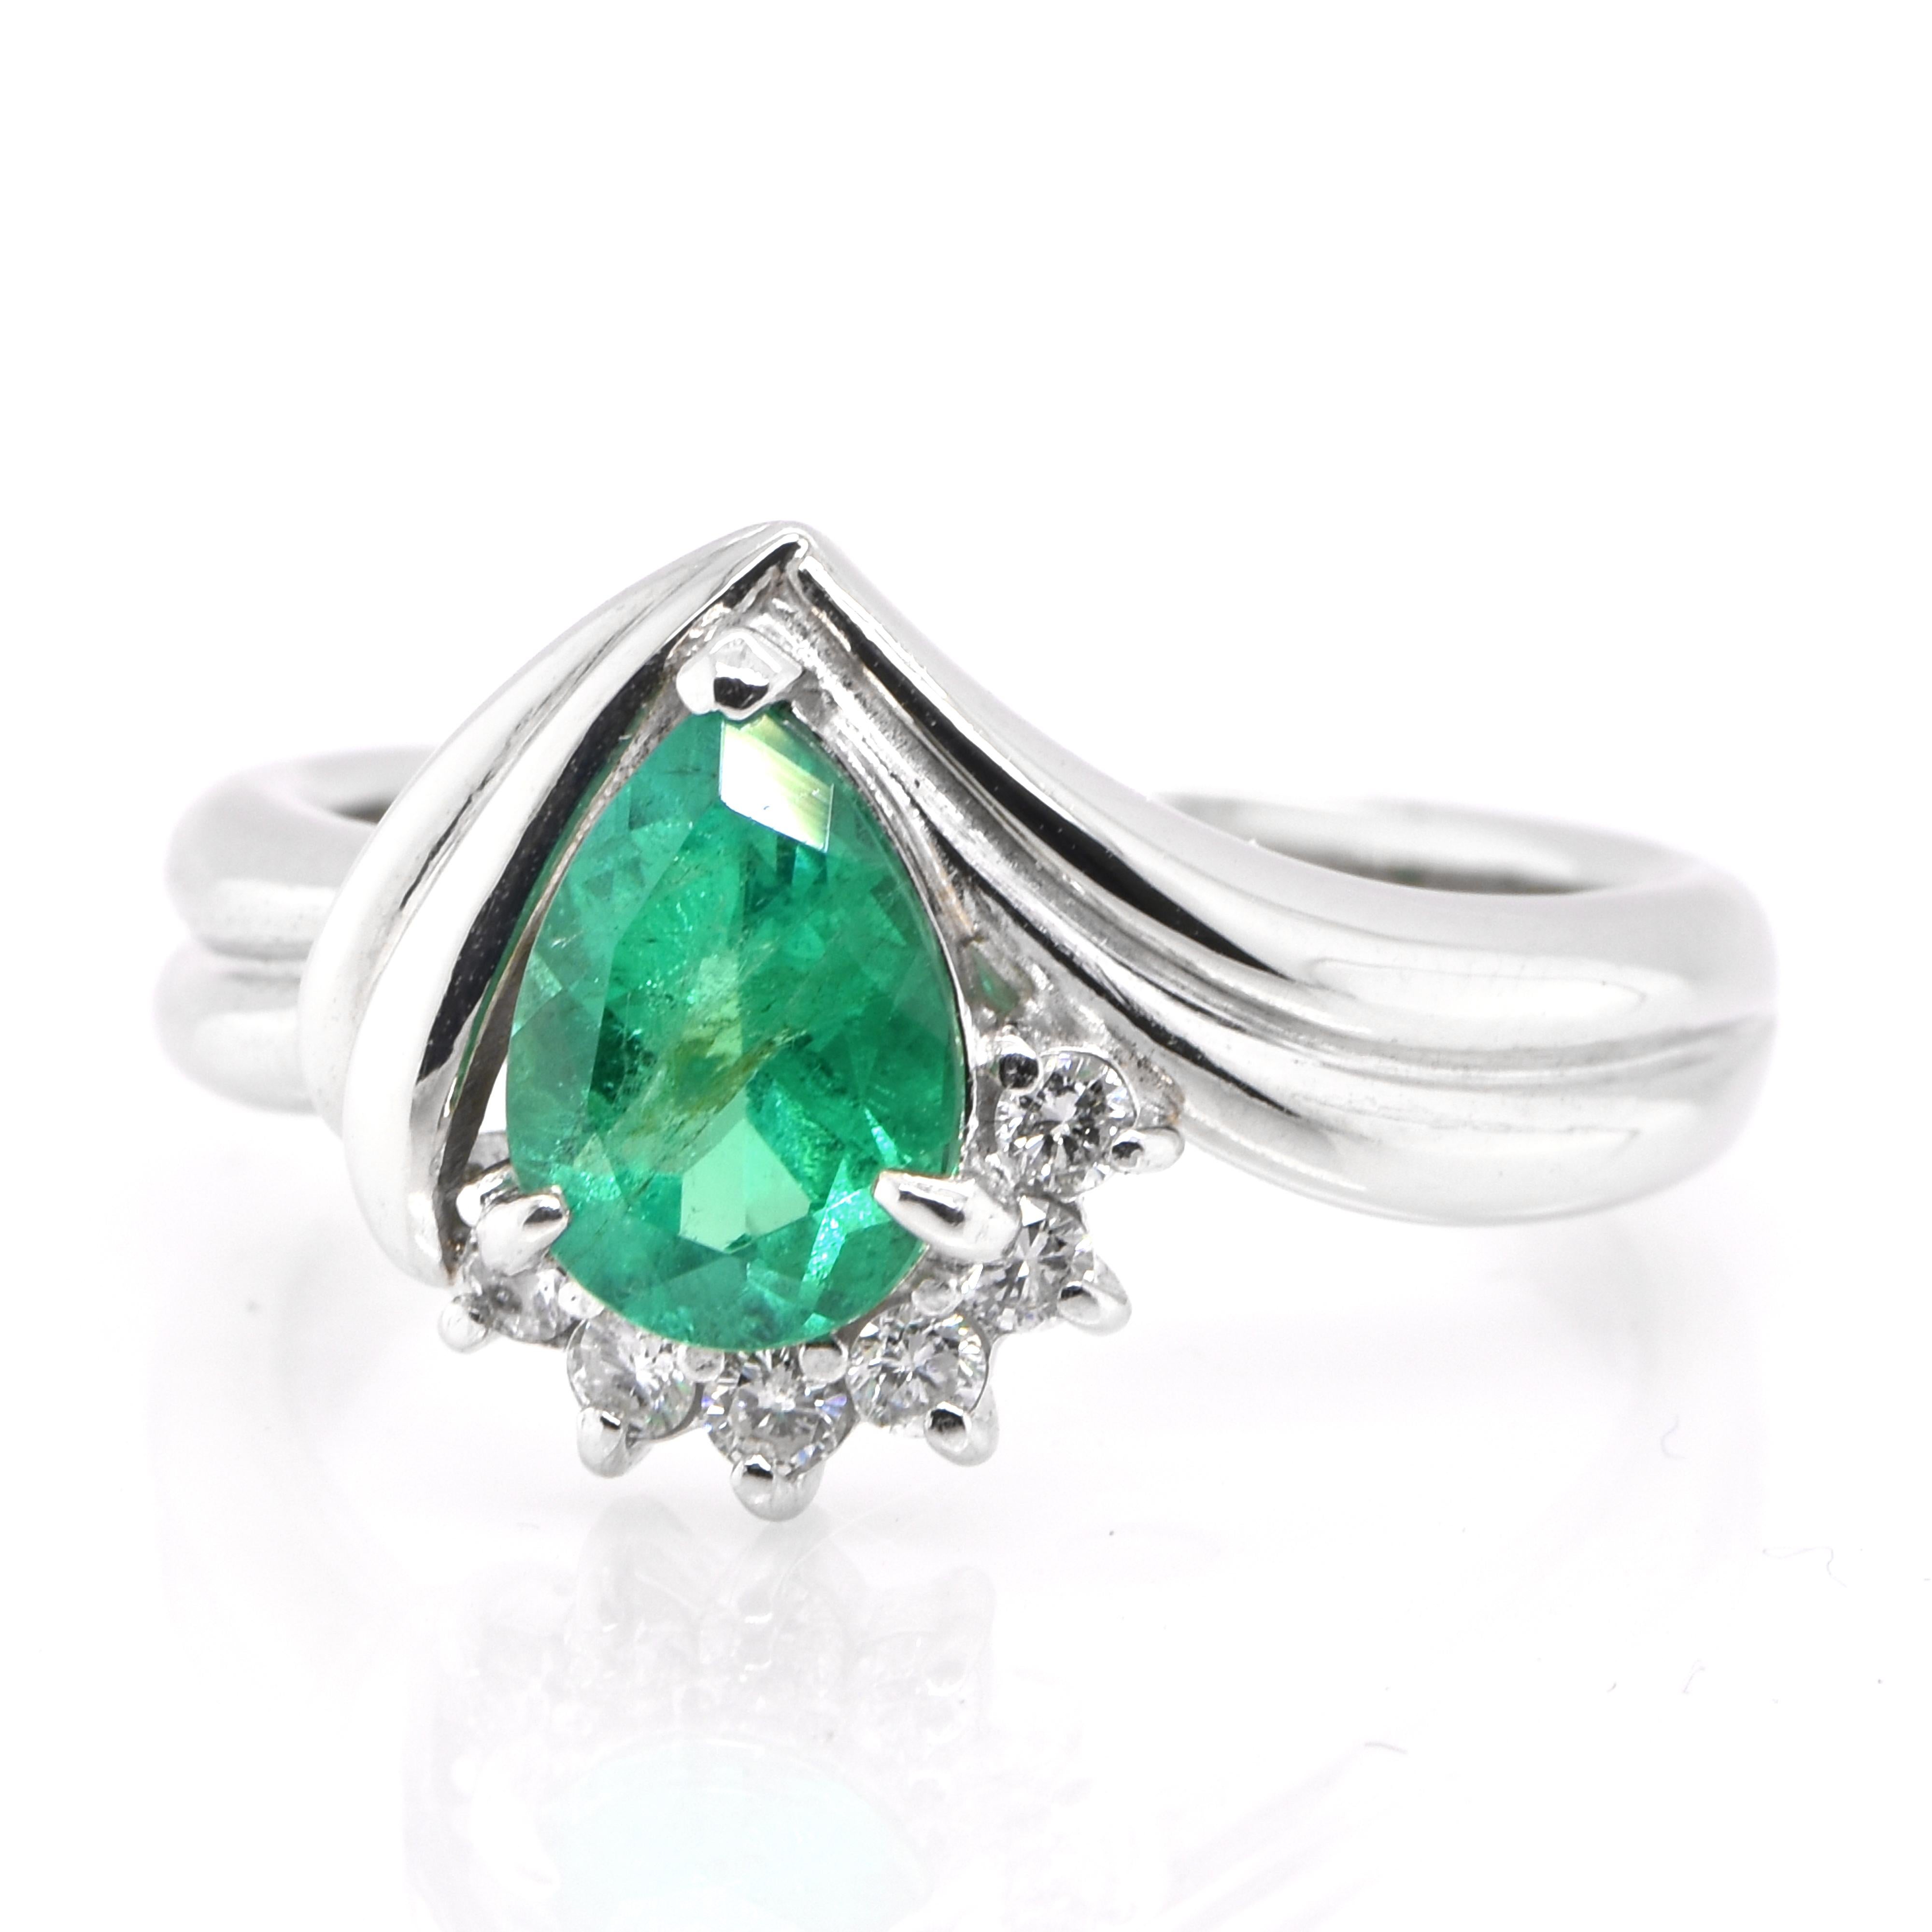 Ein atemberaubender Ring mit einem natürlichen kolumbianischen Smaragd von 0,912 Karat und Diamanten von 0,12 Karat in Platin gefasst. Seit Tausenden von Jahren bewundern die Menschen das Grün des Smaragds. Smaragde werden seit jeher mit den